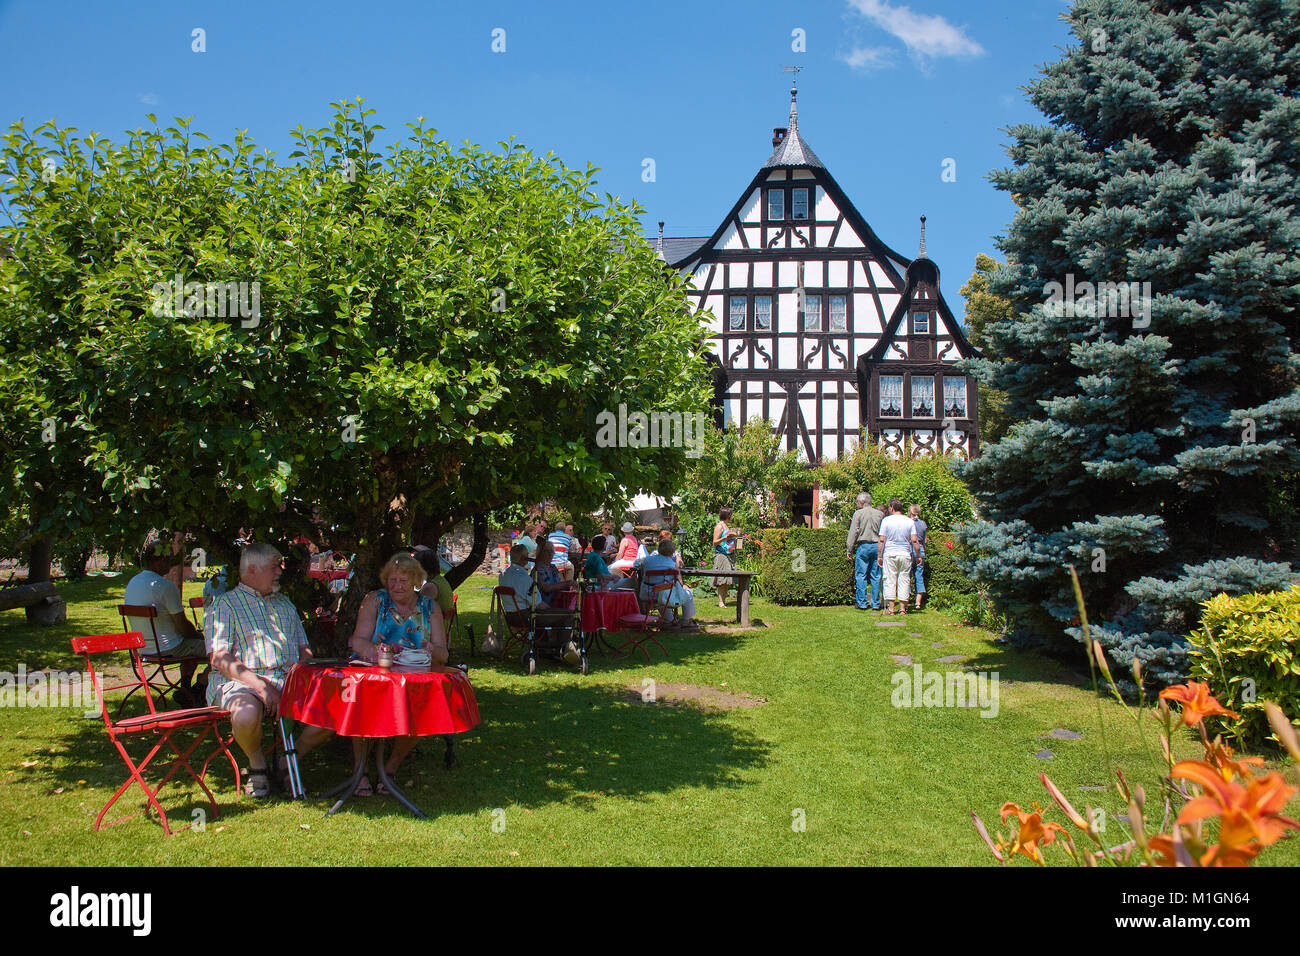 Weinberg drei Giebel Haus, 300 Jahre alte Fachwerkhaus, Gastronomie im schönen Garten, Kroev, Mosel, Rheinland-Pfalz, Deutschland Stockfoto